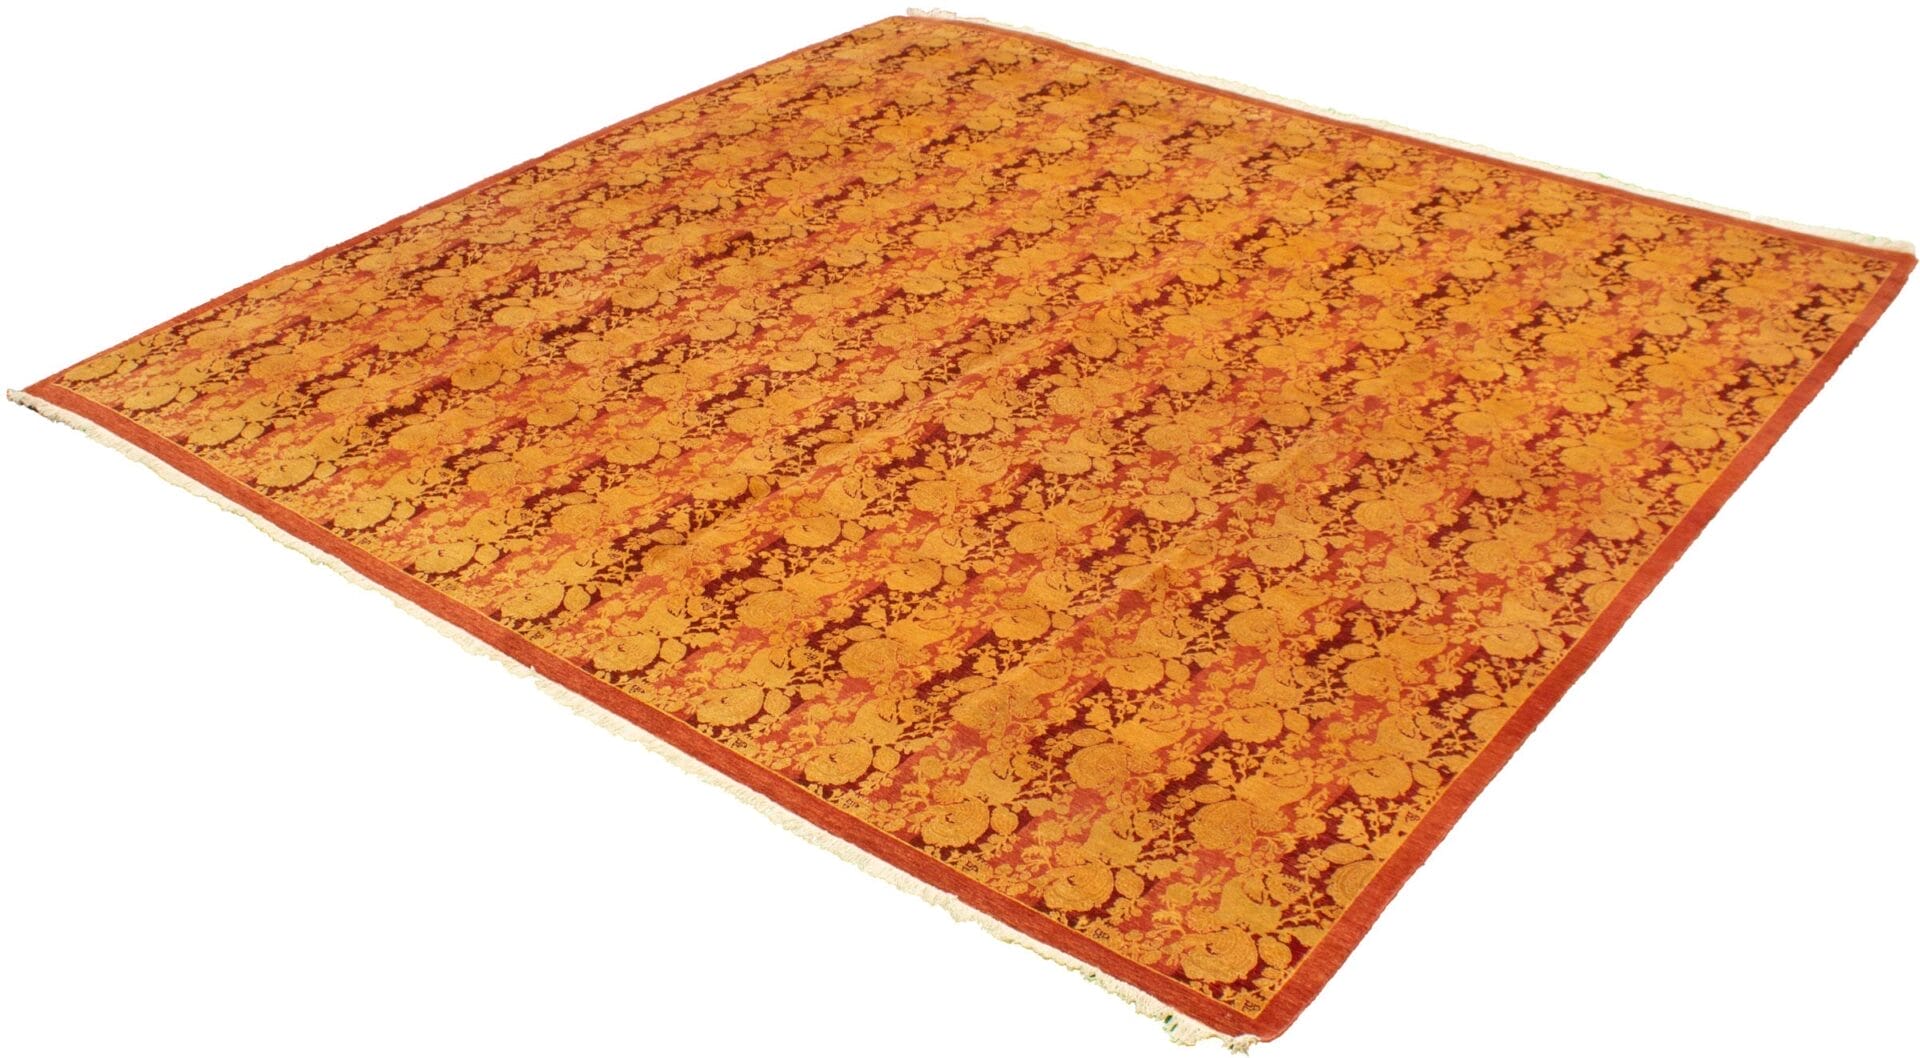 Beschrijving: Een oranje en gouden tapijt op een witte achtergrond.